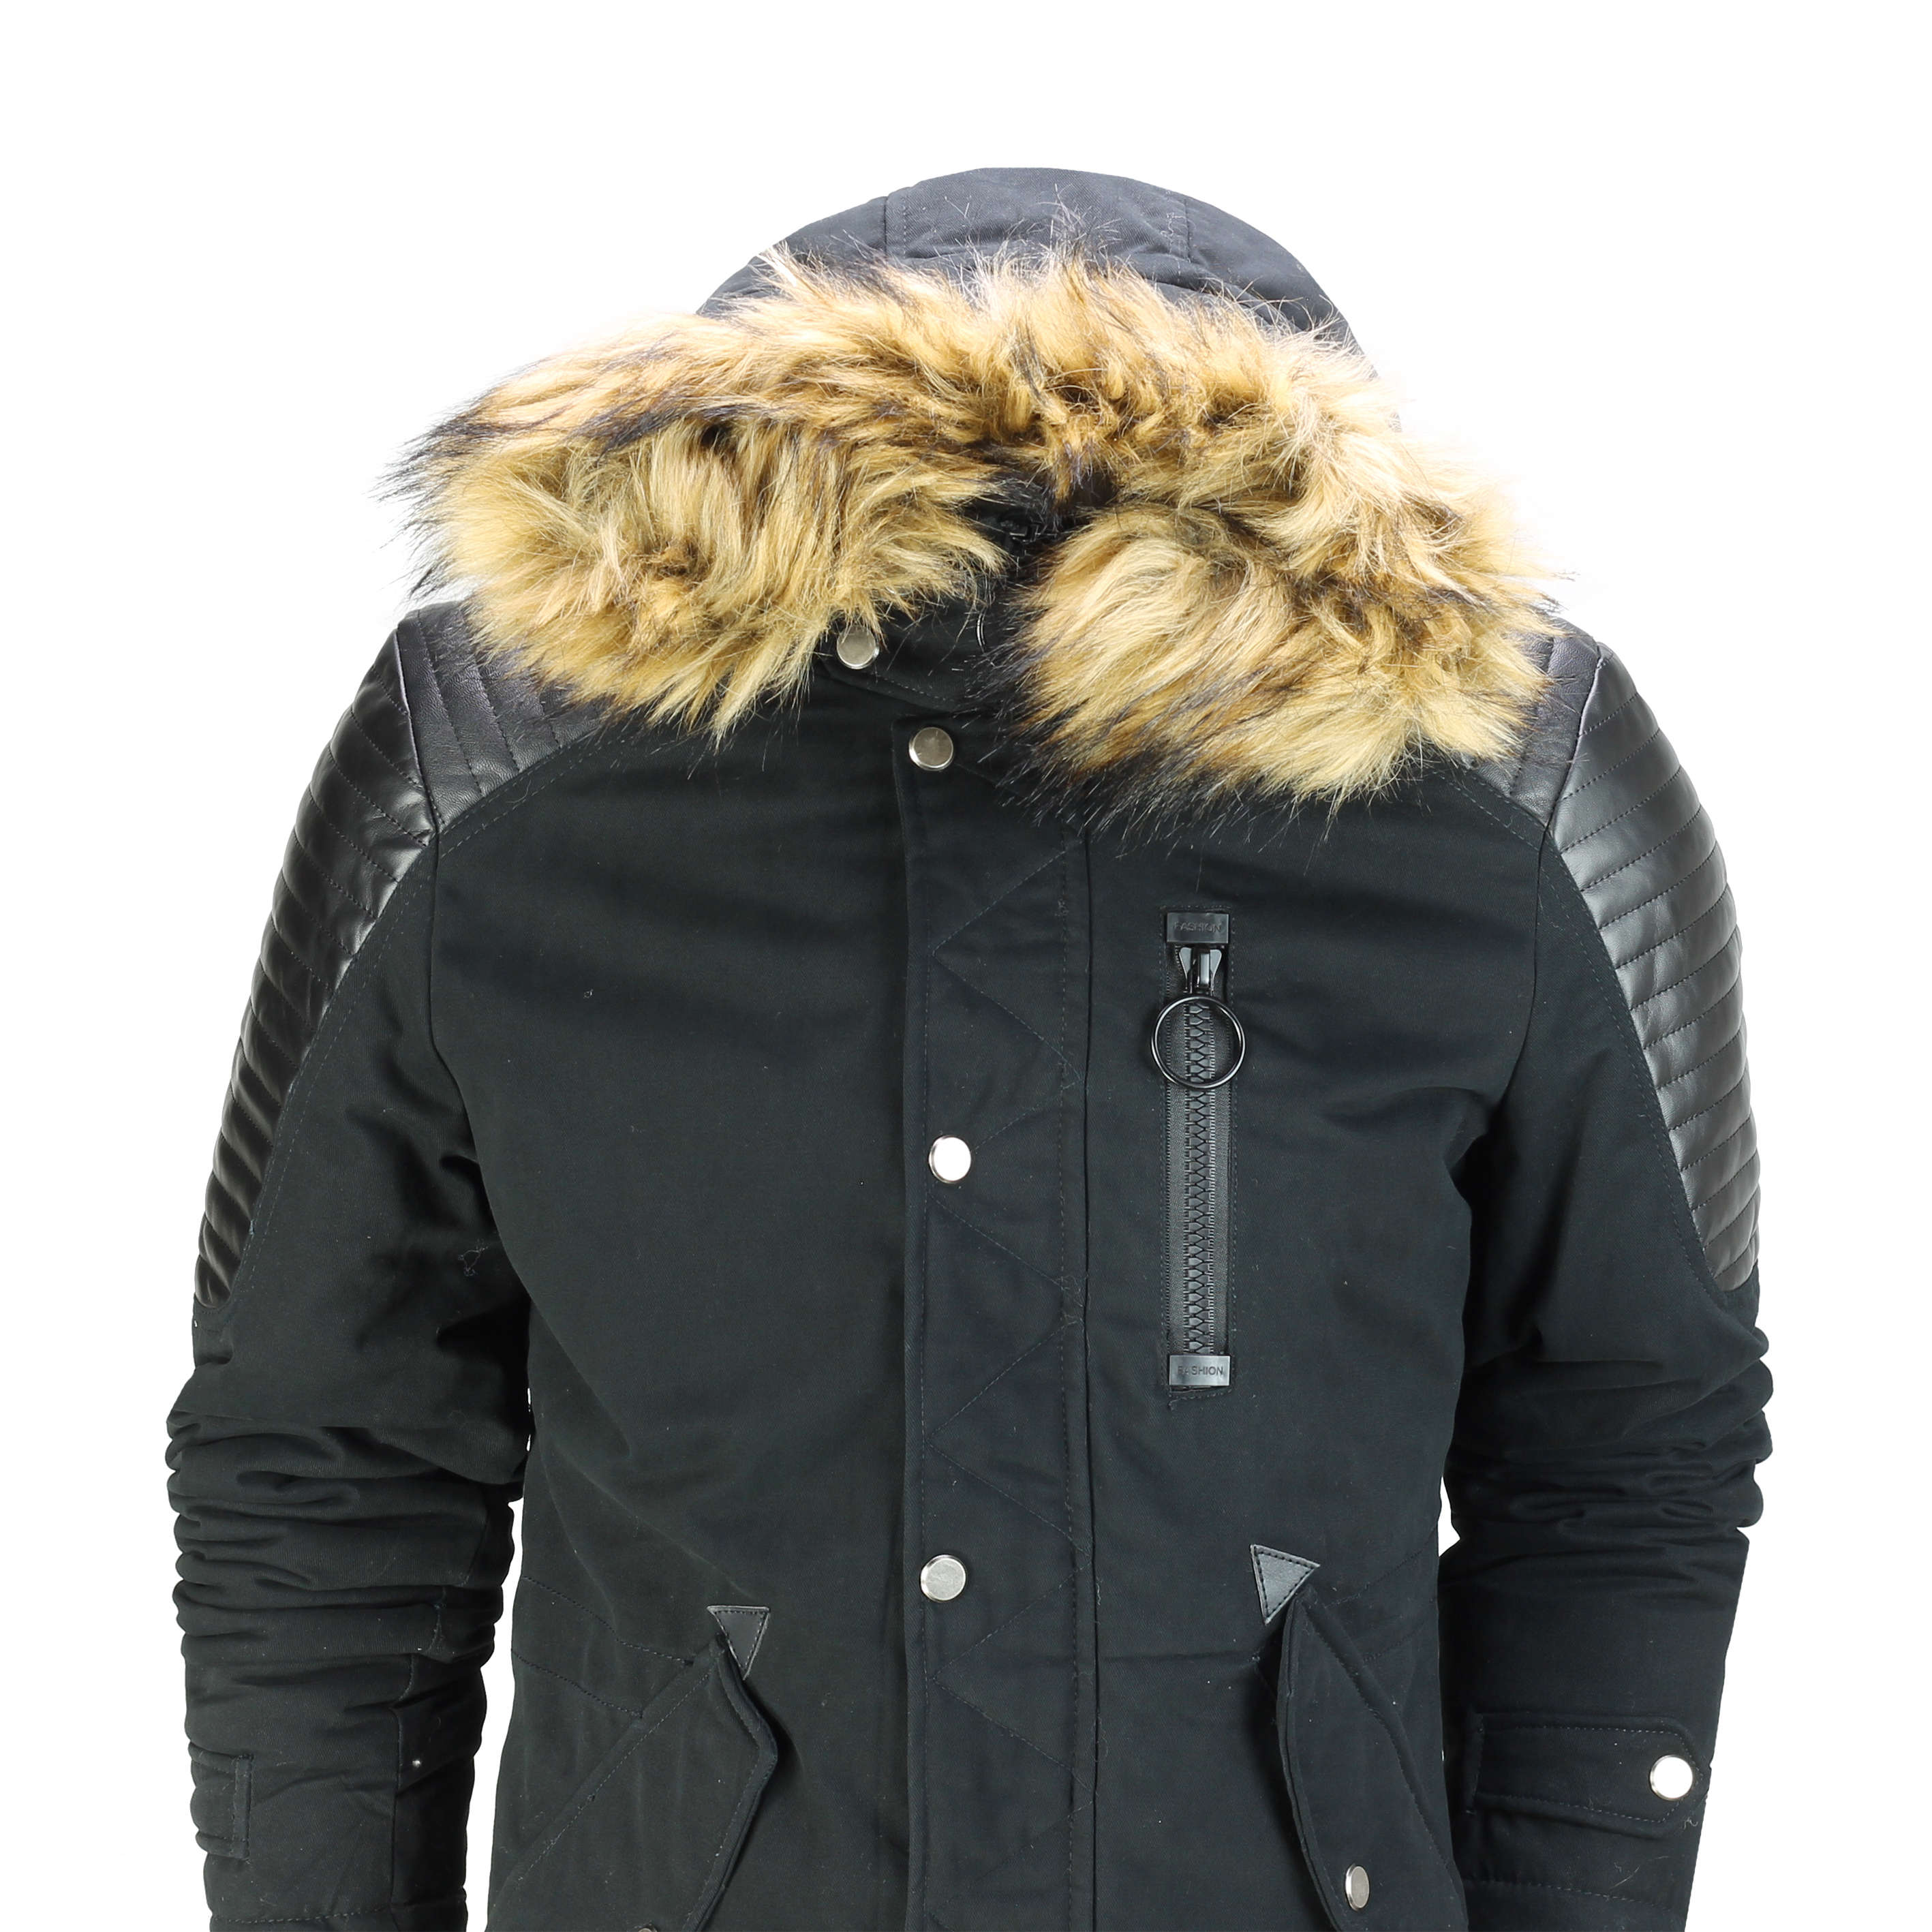 Mens Winter Jacket Warm Padded Faux Leather Retro Biker Style Fur Hood ...